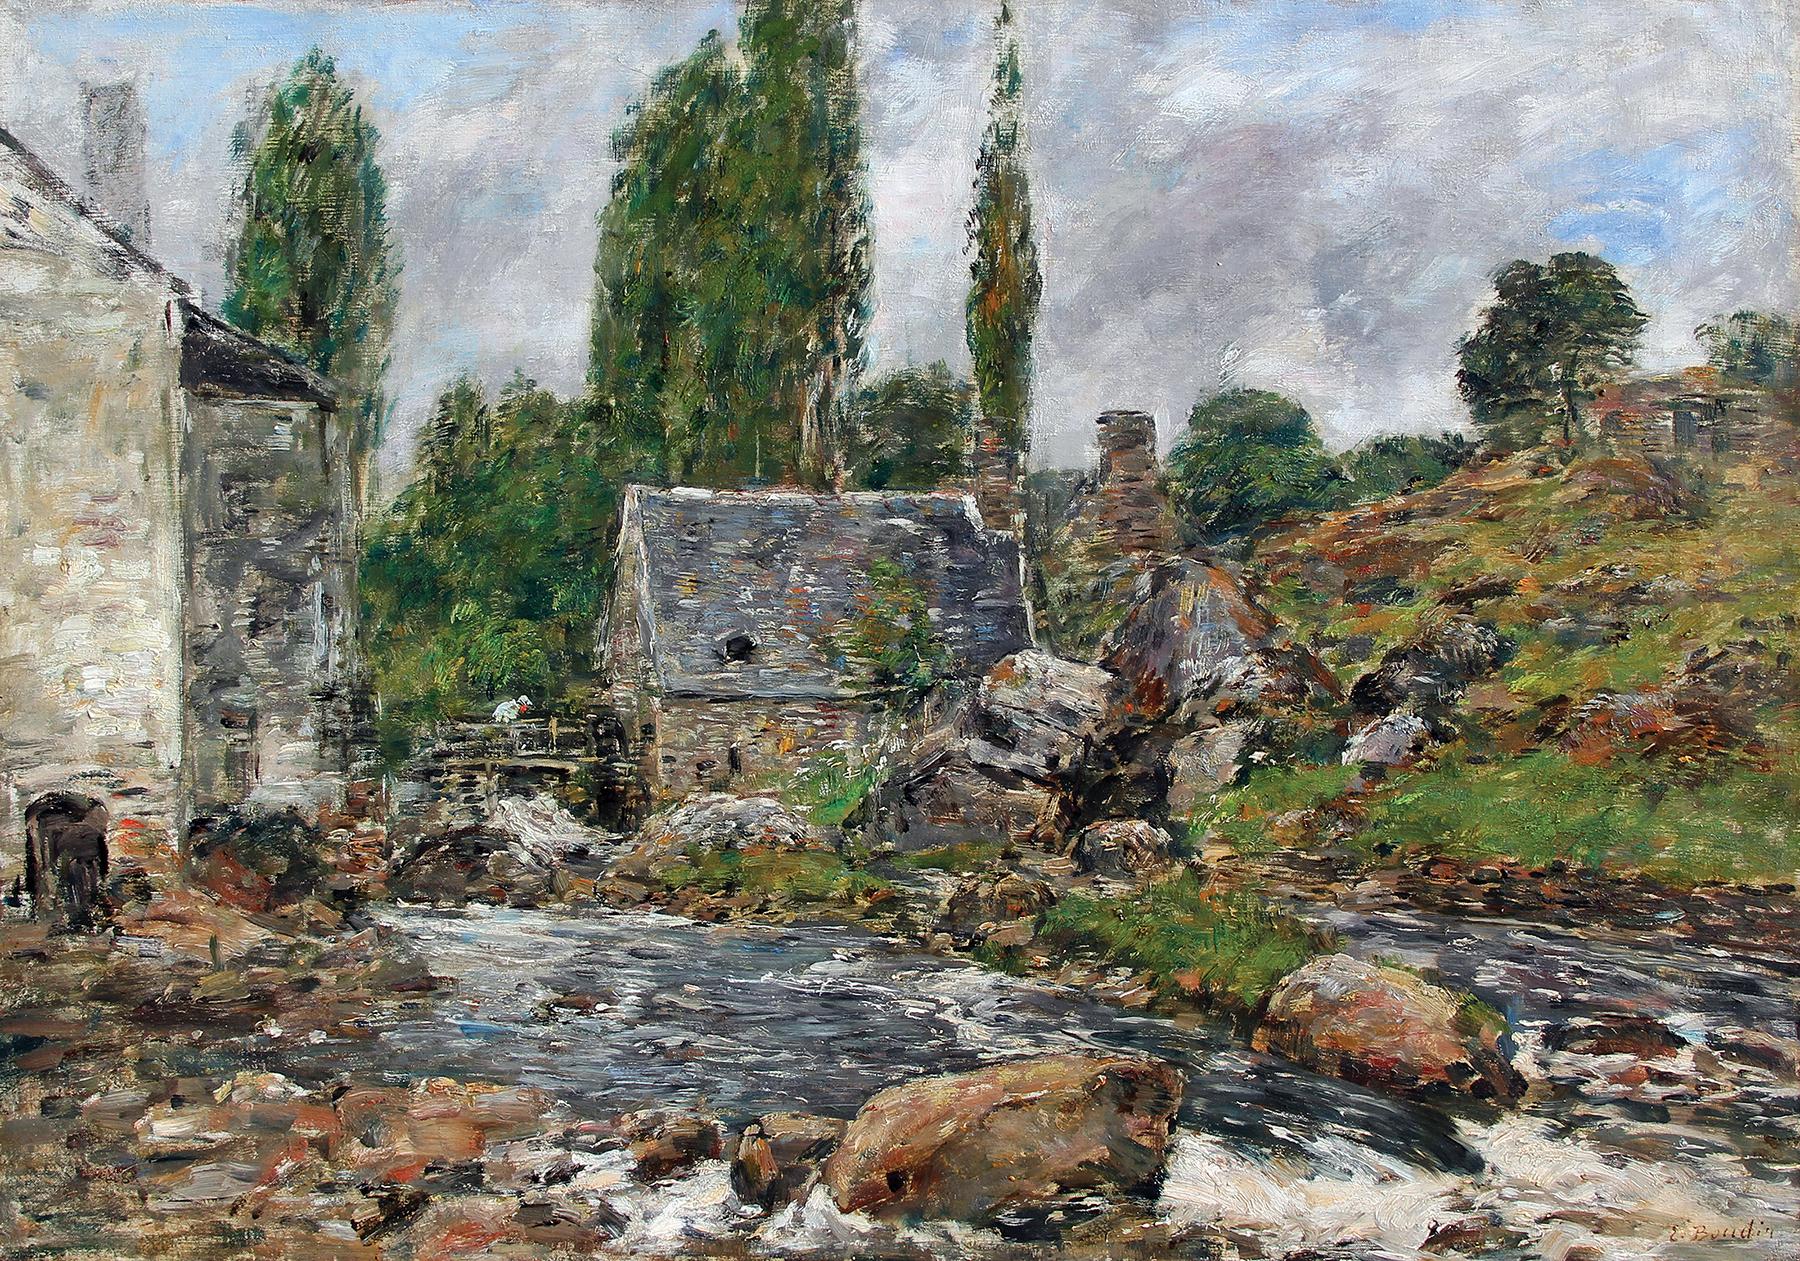 Eugène Louis Boudin Landscape Painting - Pont-Aven - La Rivière après la Pluie - Eugène Boudin - Oil on Canvas - French